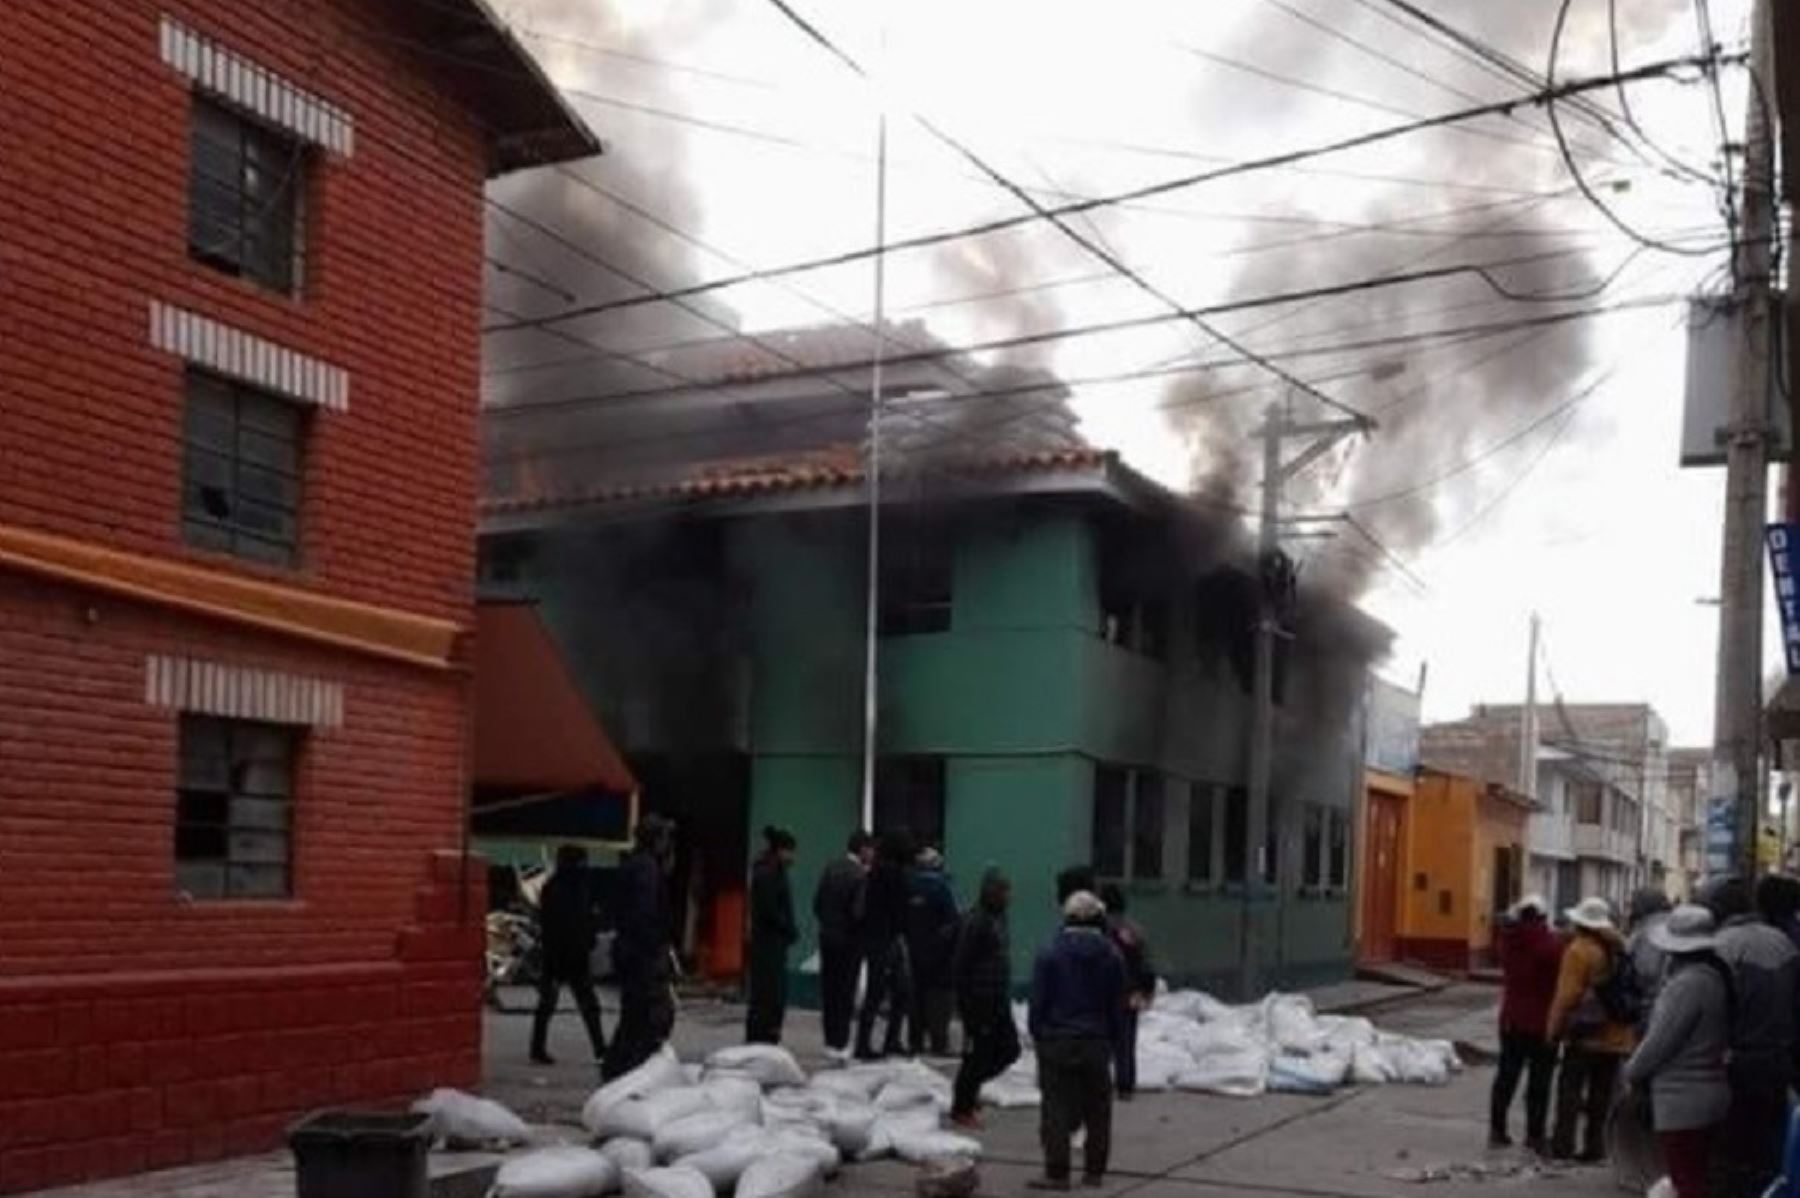 La comisaría de Ilave, en la provincia puneña de El Collao, fue incendiada esta mañana por un grupo de vándalos, en el marco de las protestas sociales que se registran en esta región, que iniciaron el pasado 4 de enero y que aún no cesan.